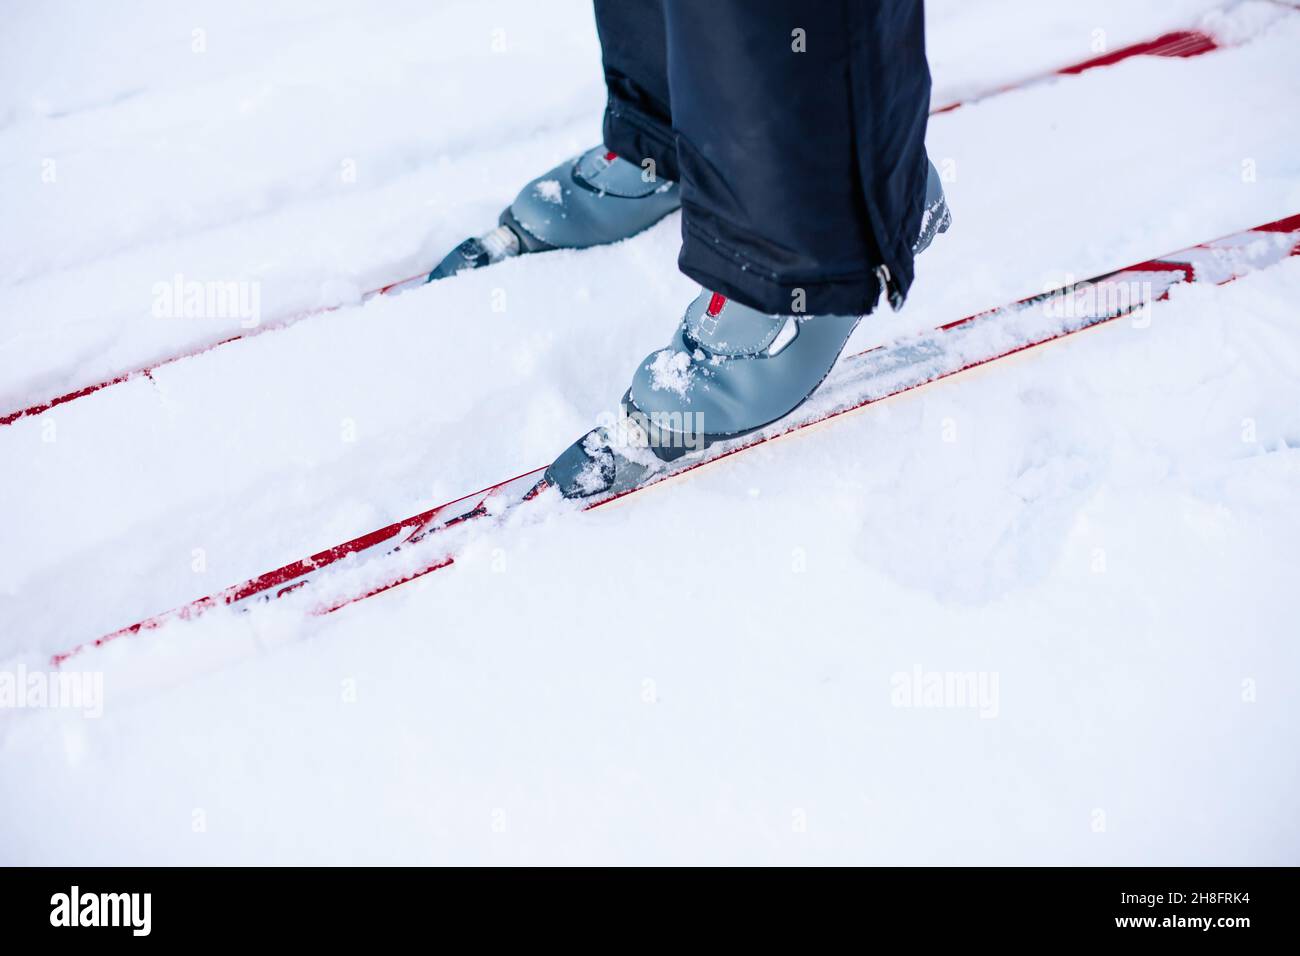 Gros plan sur les skis et les chaussures de ski grises.Homme skier sur la neige d'hiver par beau temps, vue latérale Banque D'Images